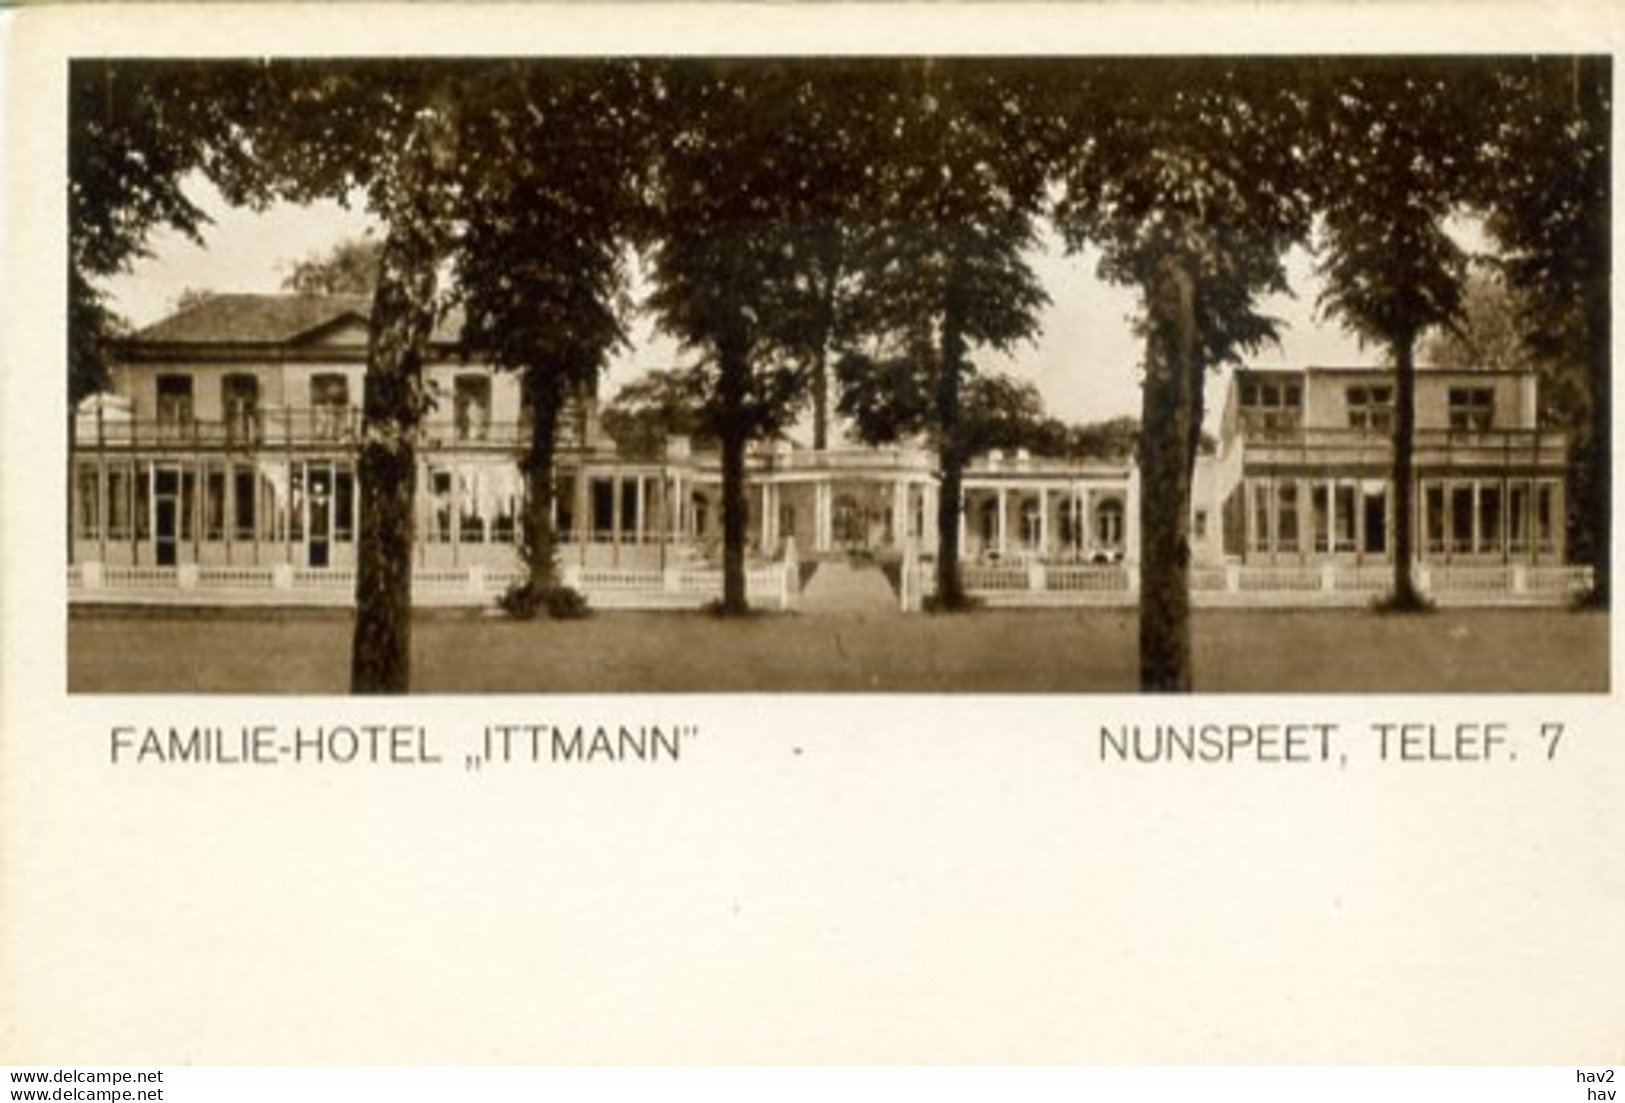 Nunspeet Familie Hotel Ittmann AM1828 - Nunspeet